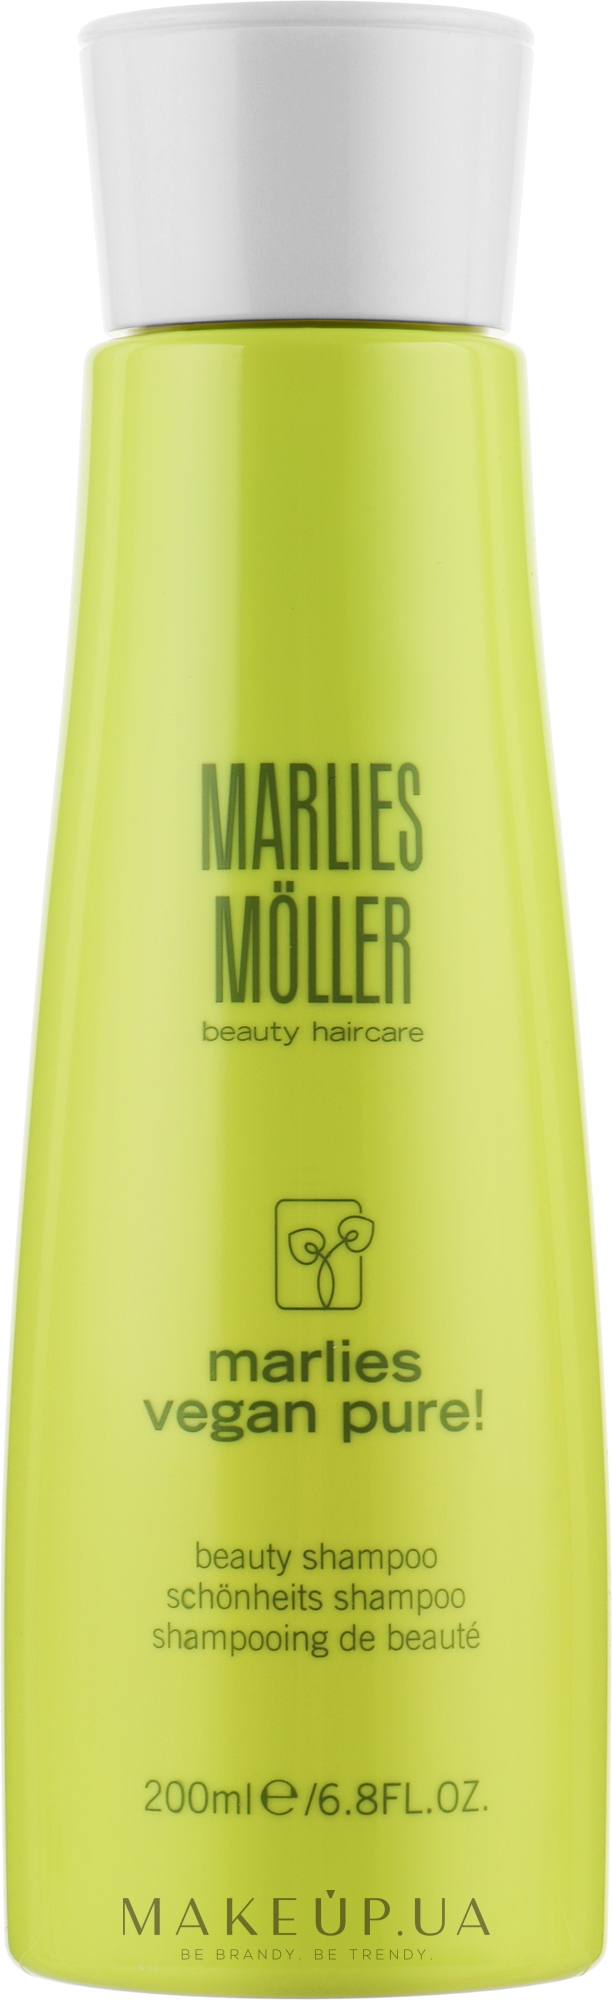 Натуральный шампунь для волос "Веган" - Marlies Moller Marlies Vegan Pure! Beauty Shampoo — фото 200ml